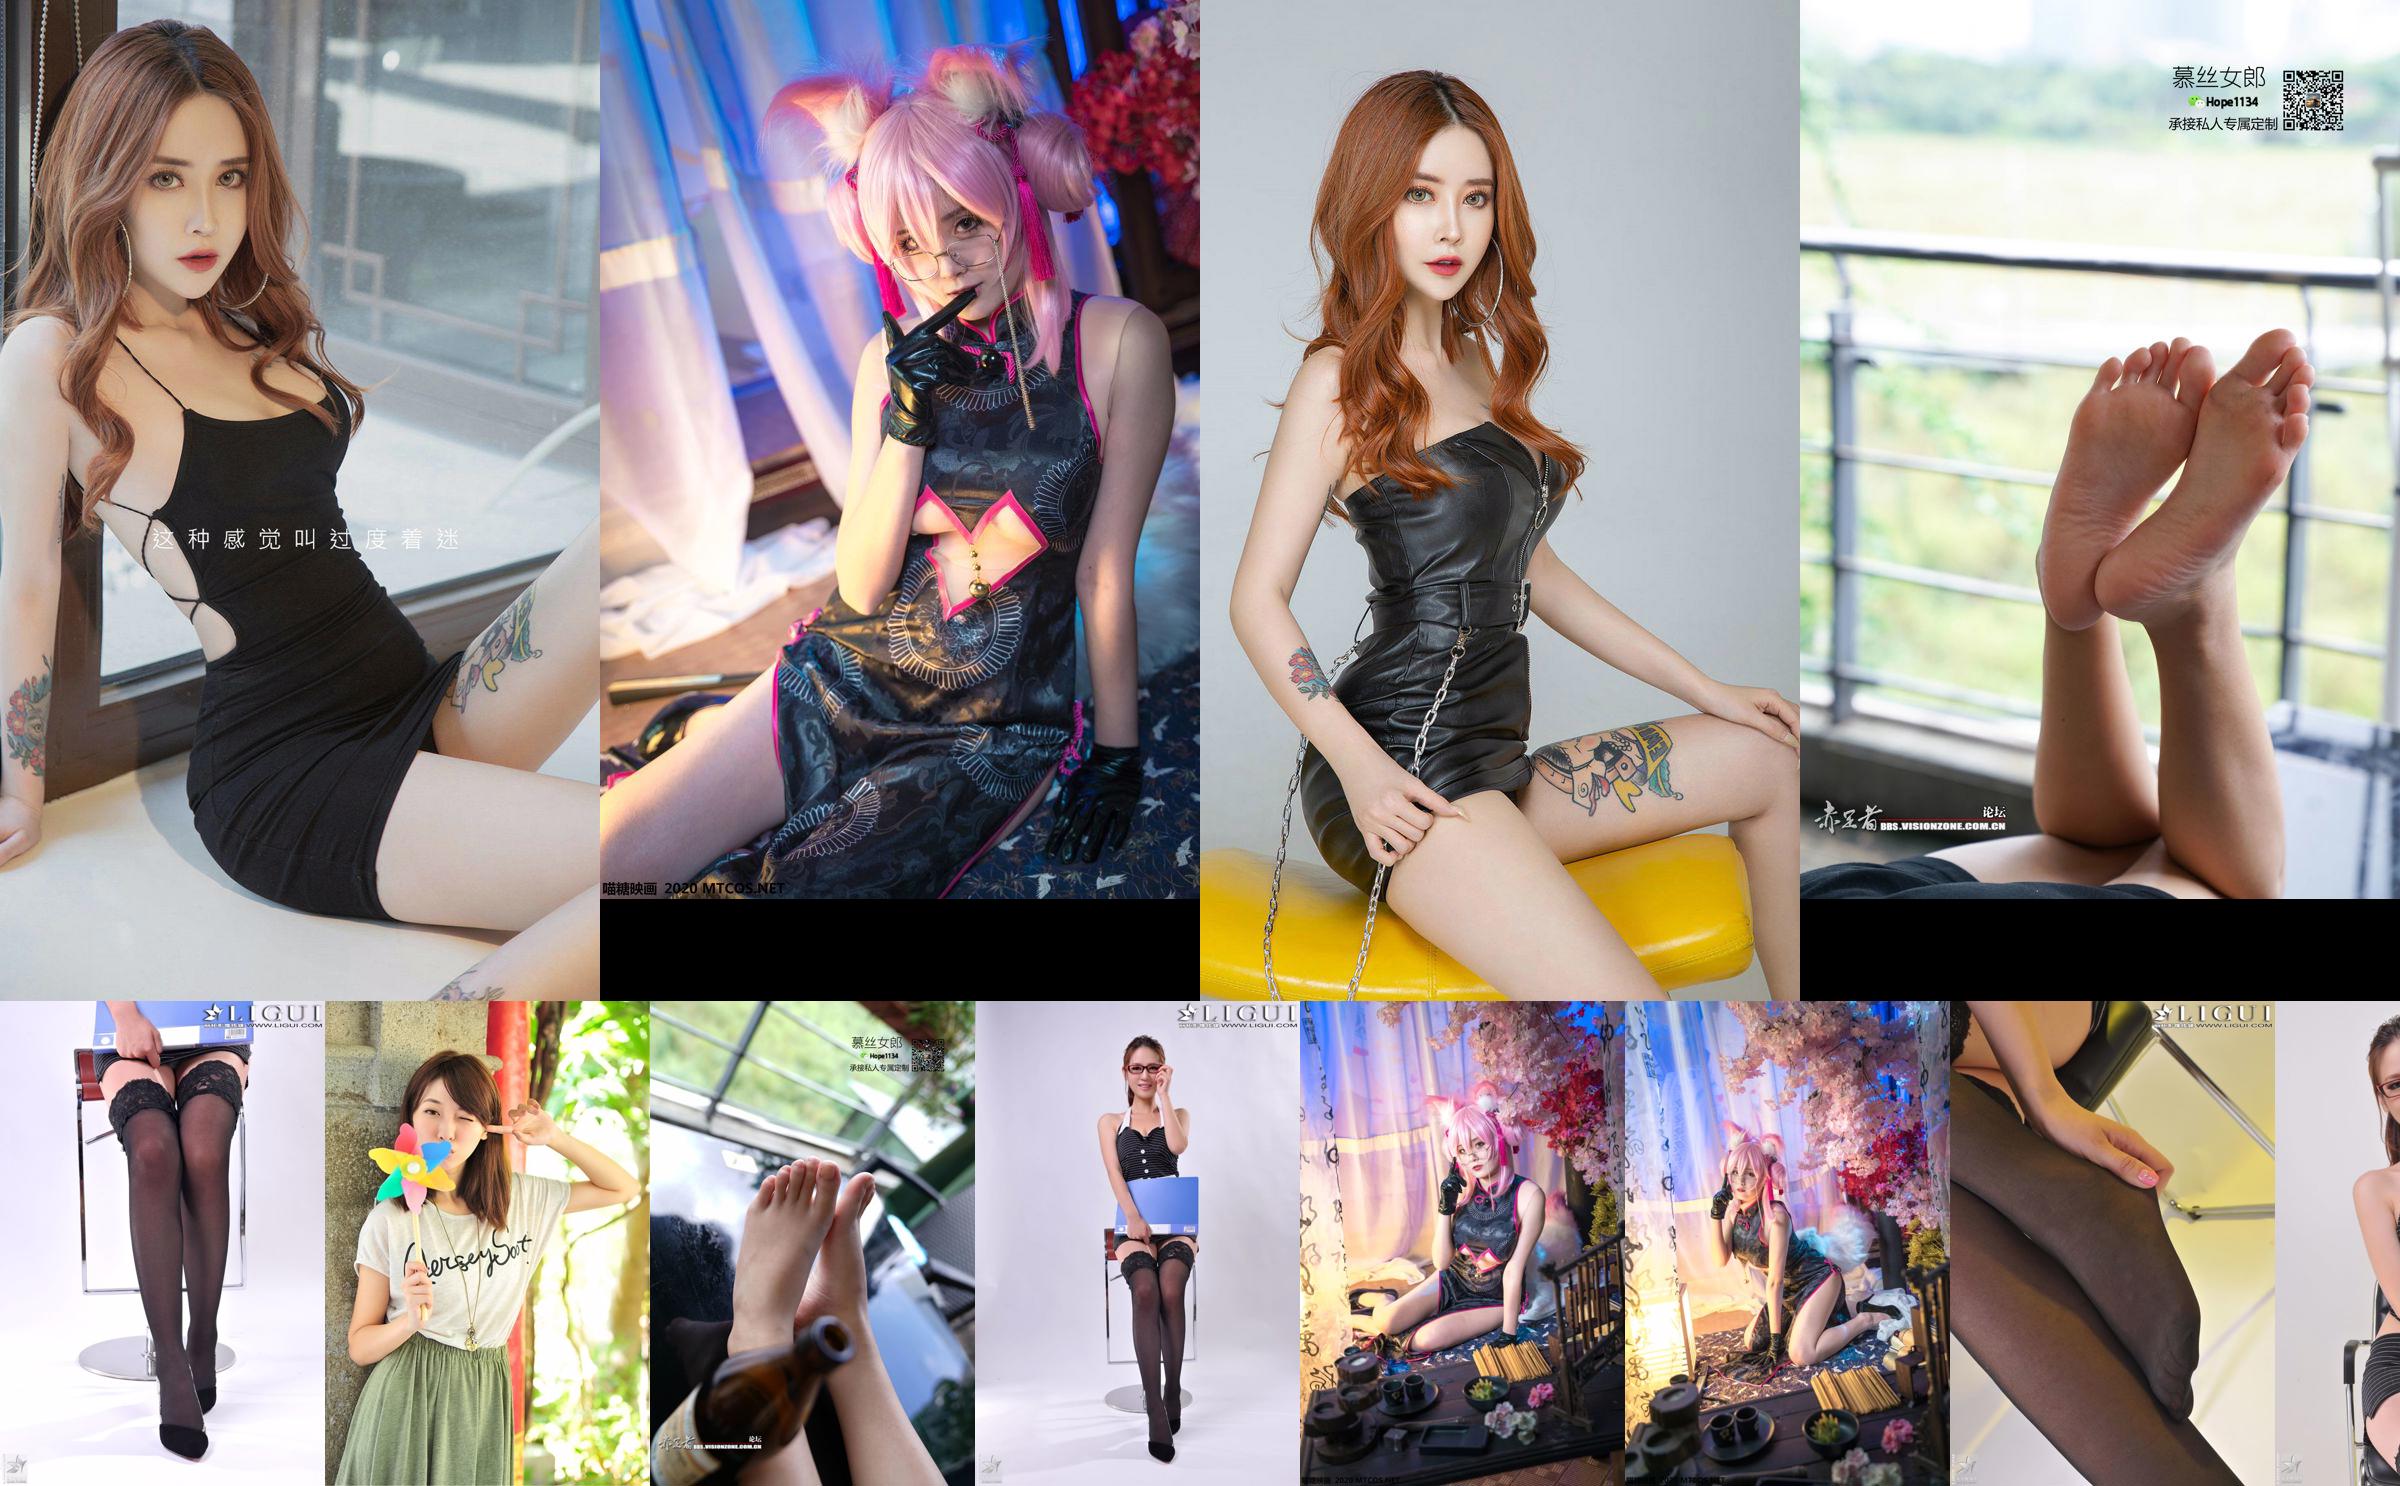 [丽 柜 贵 足 LiGui] Model Xiaoyu's "Professional Wear Glasses Girl" voltooide werken No.0be3ec Pagina 1